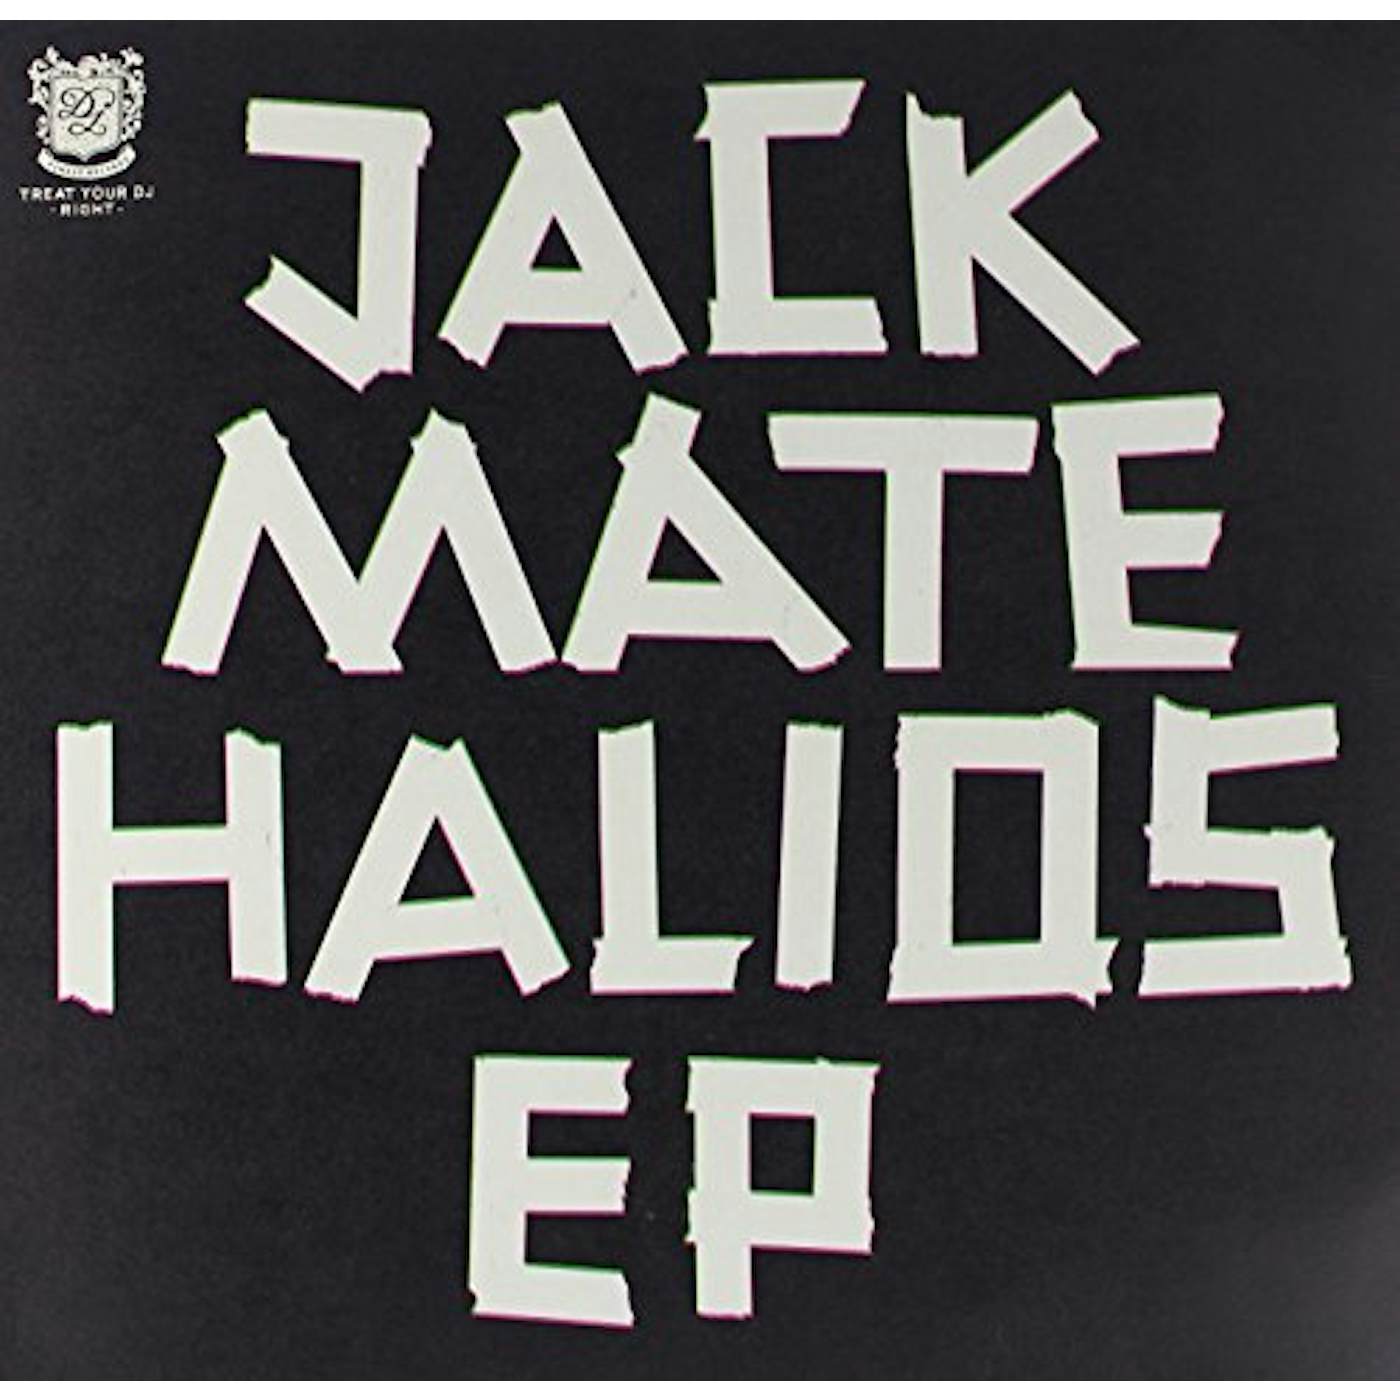 Jackmate Halios Vinyl Record